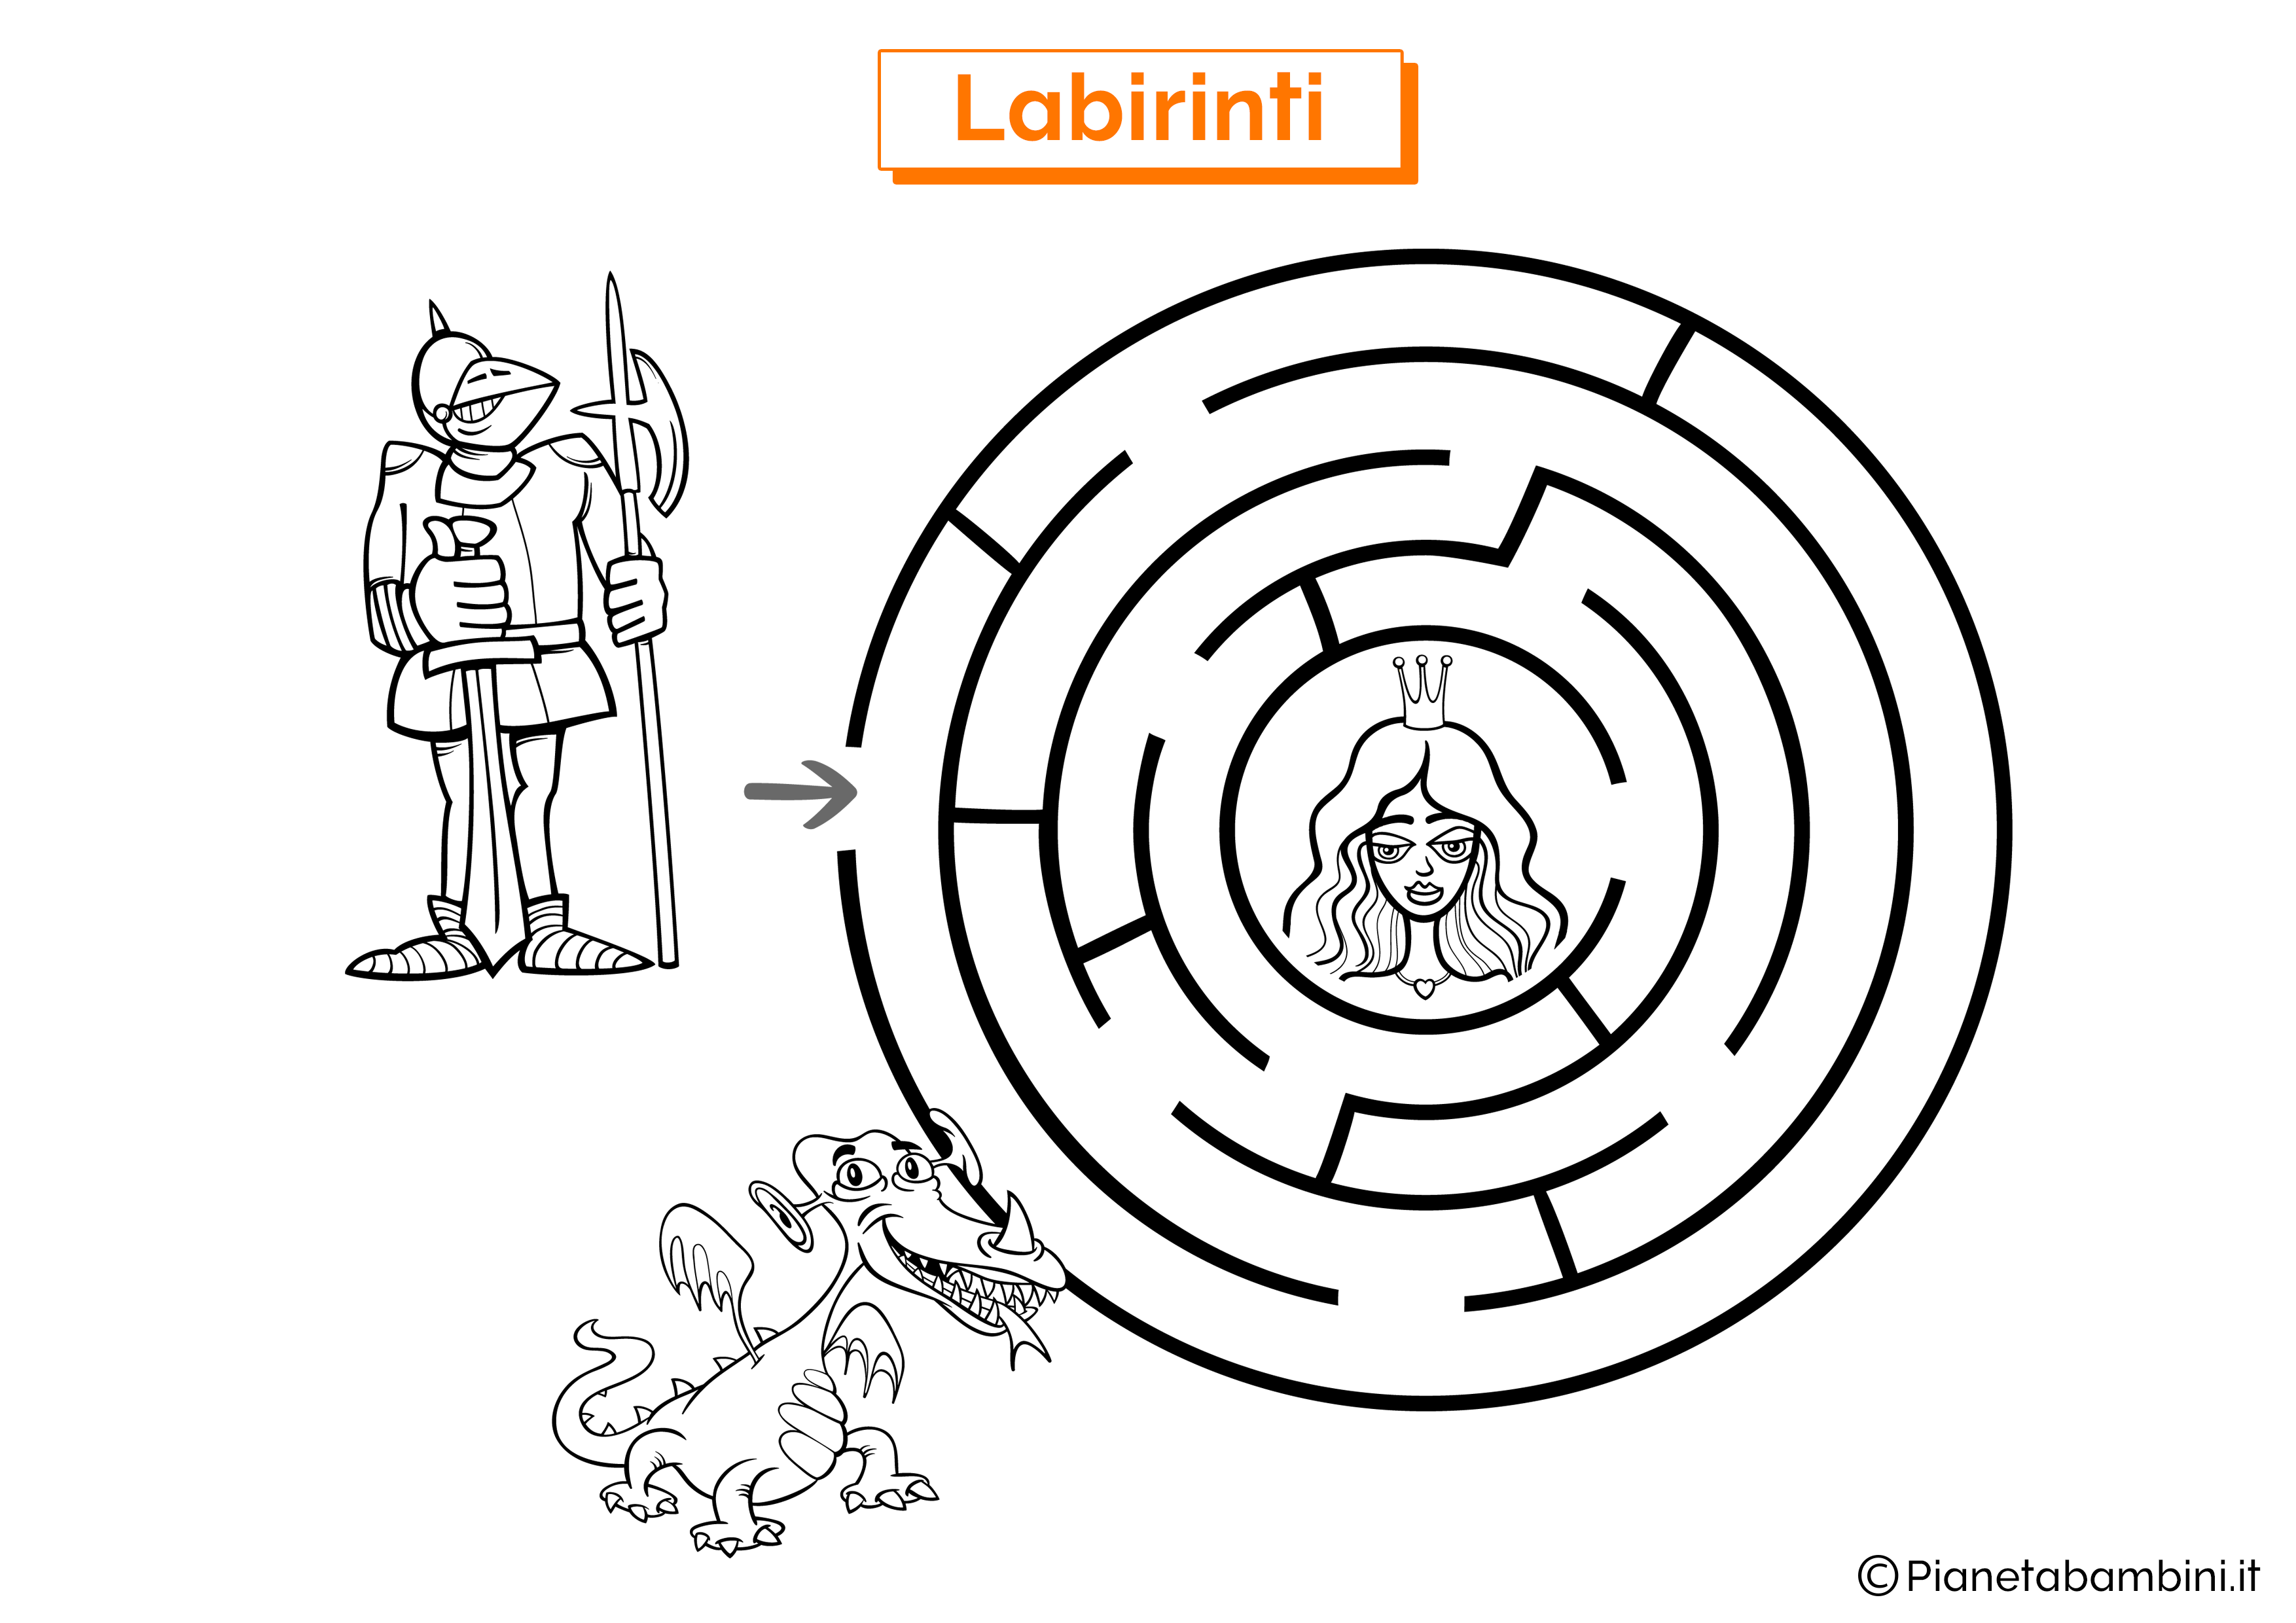 Labirinto con cavaliere, drago e principessa da stampare